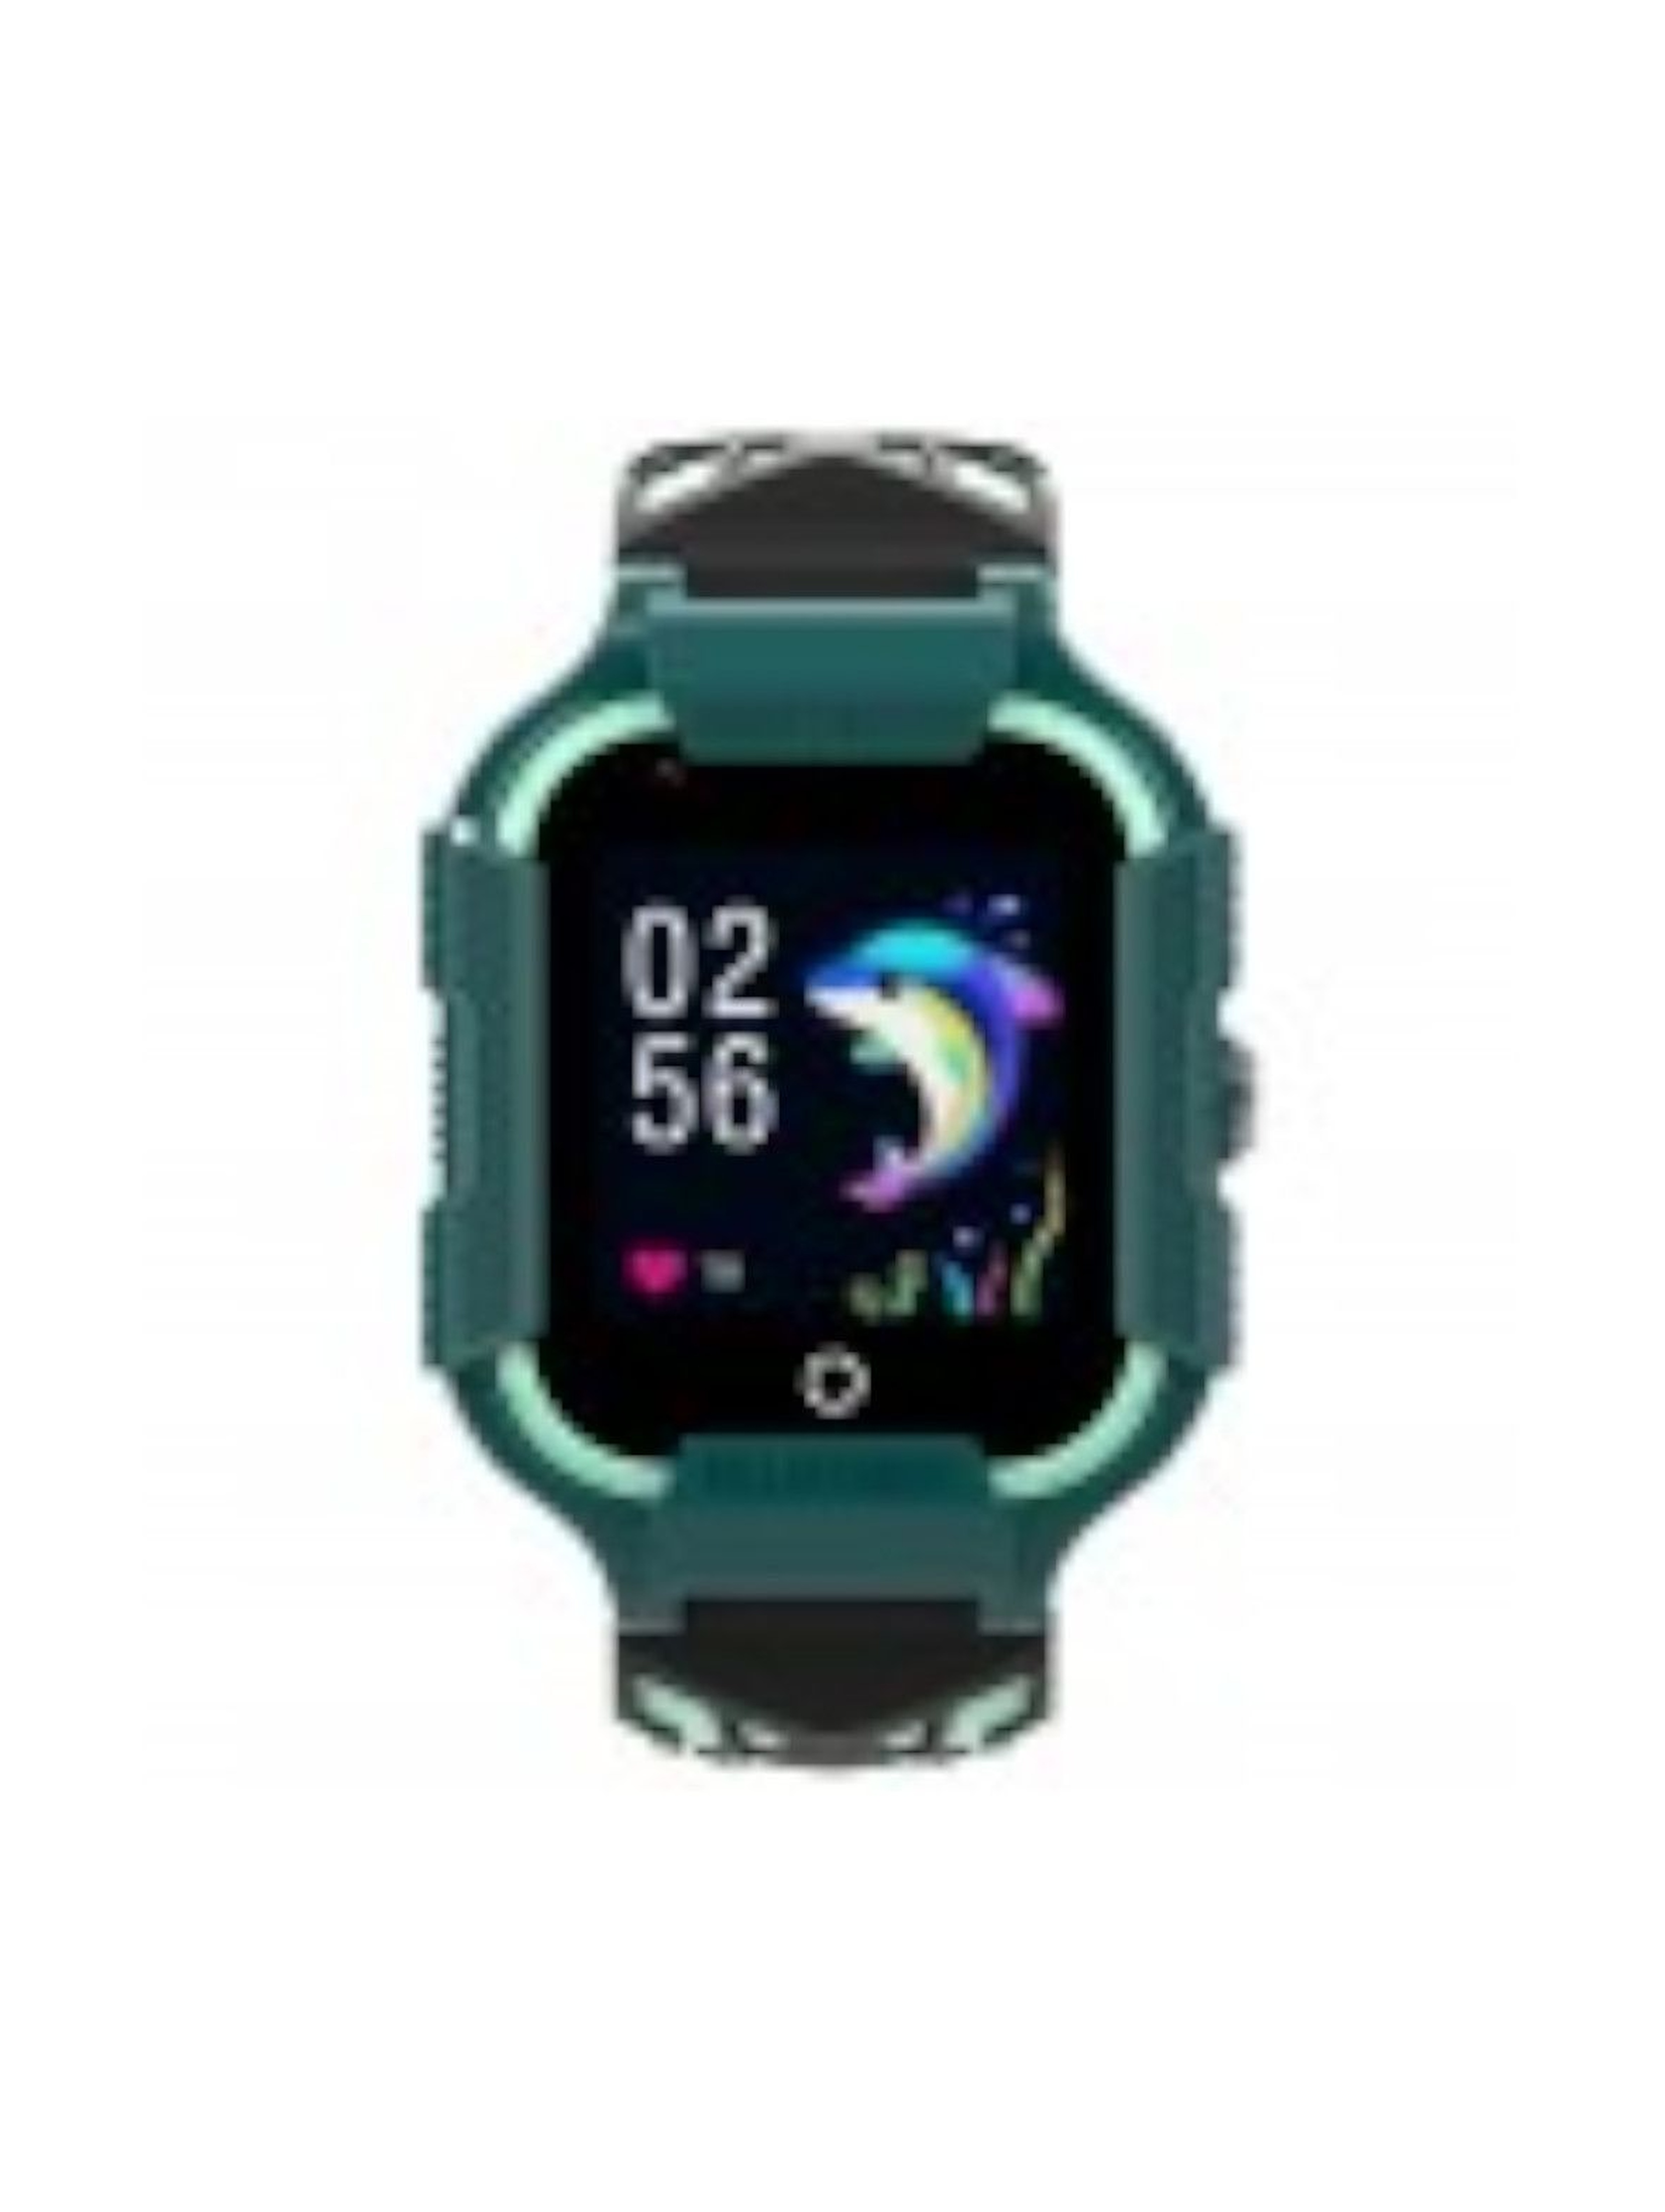 Smartwatch Garett Kids Neon 4G - zielony